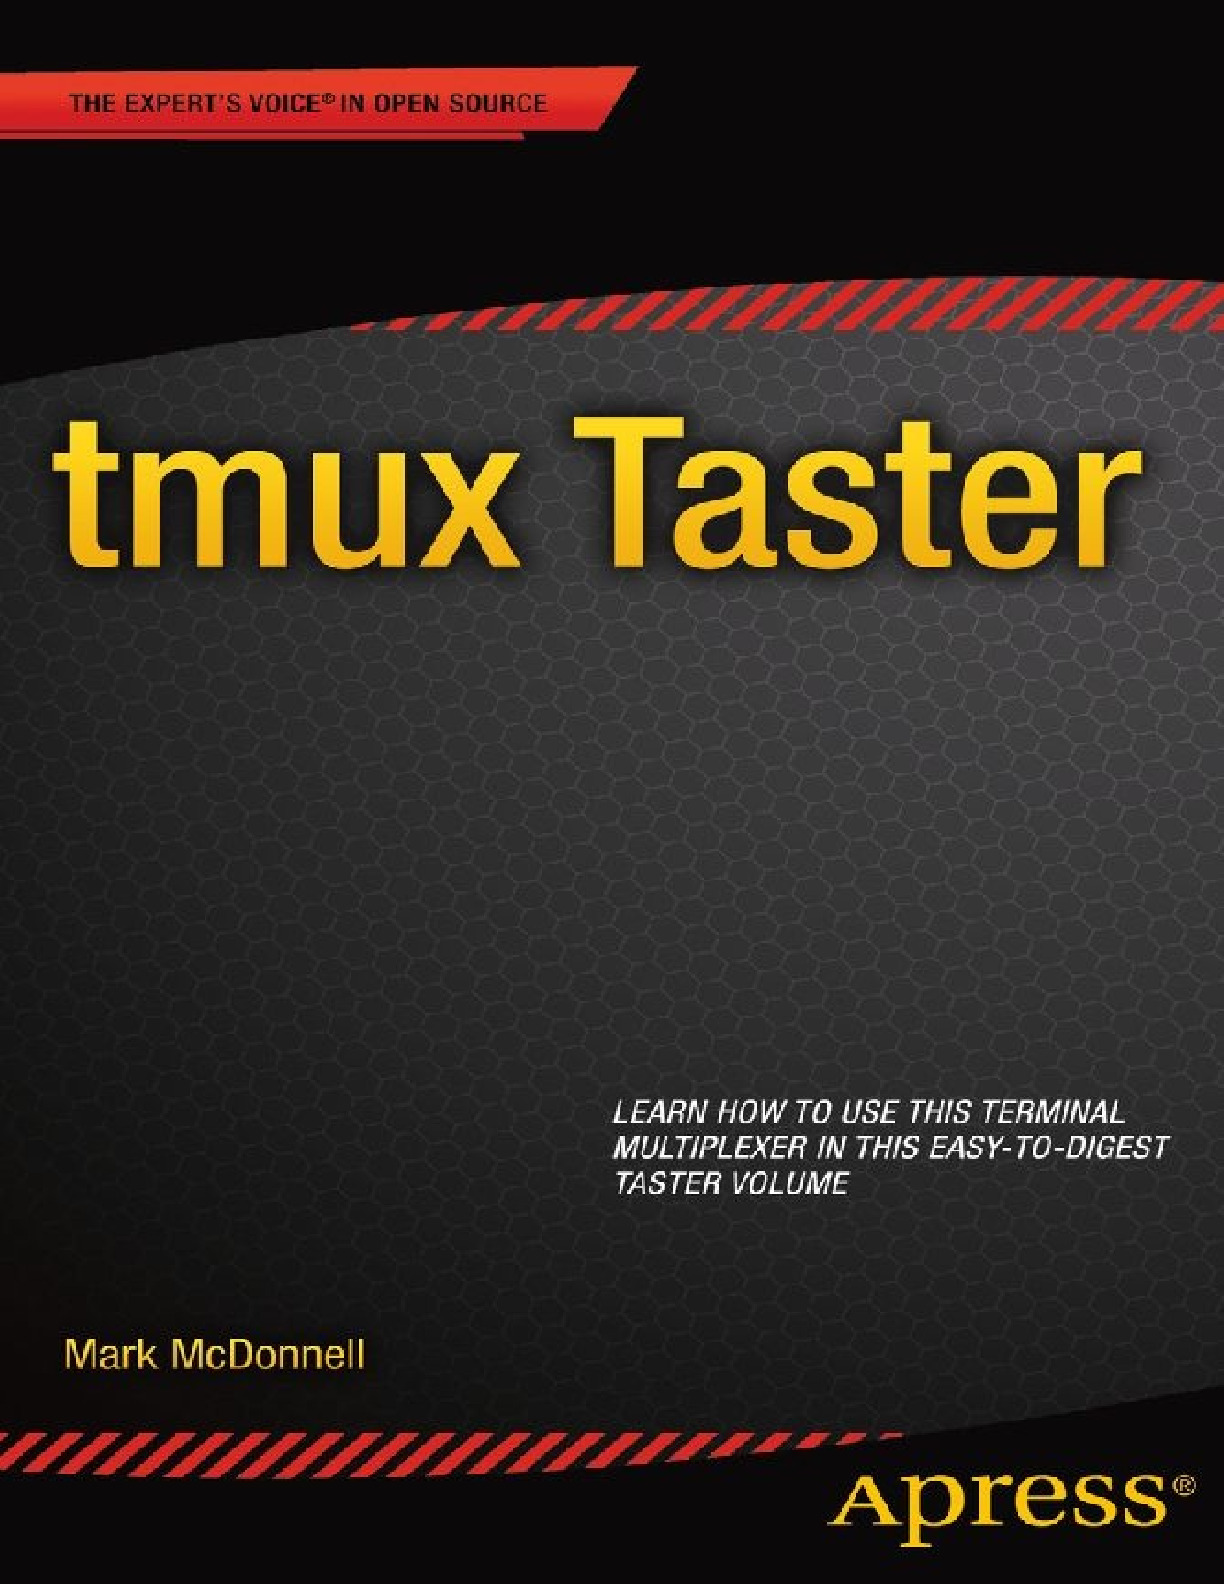 tmux-taster-2014